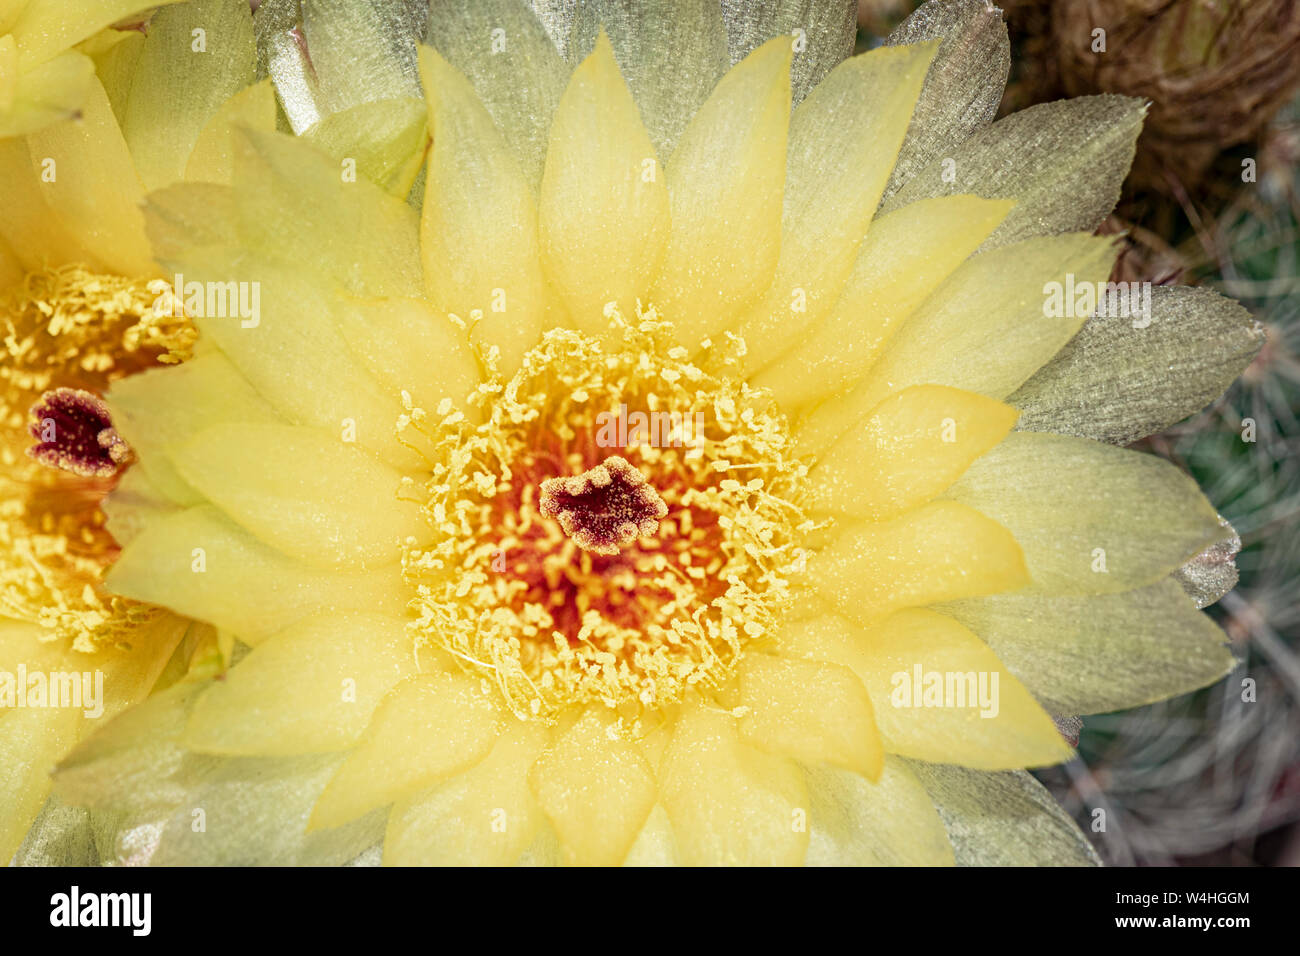 Un primo piano di un giallo parodia notocactus apricus sfera fiore di cactus che mostra i dettagli e la consistenza dei petali, pistels e stami Foto Stock